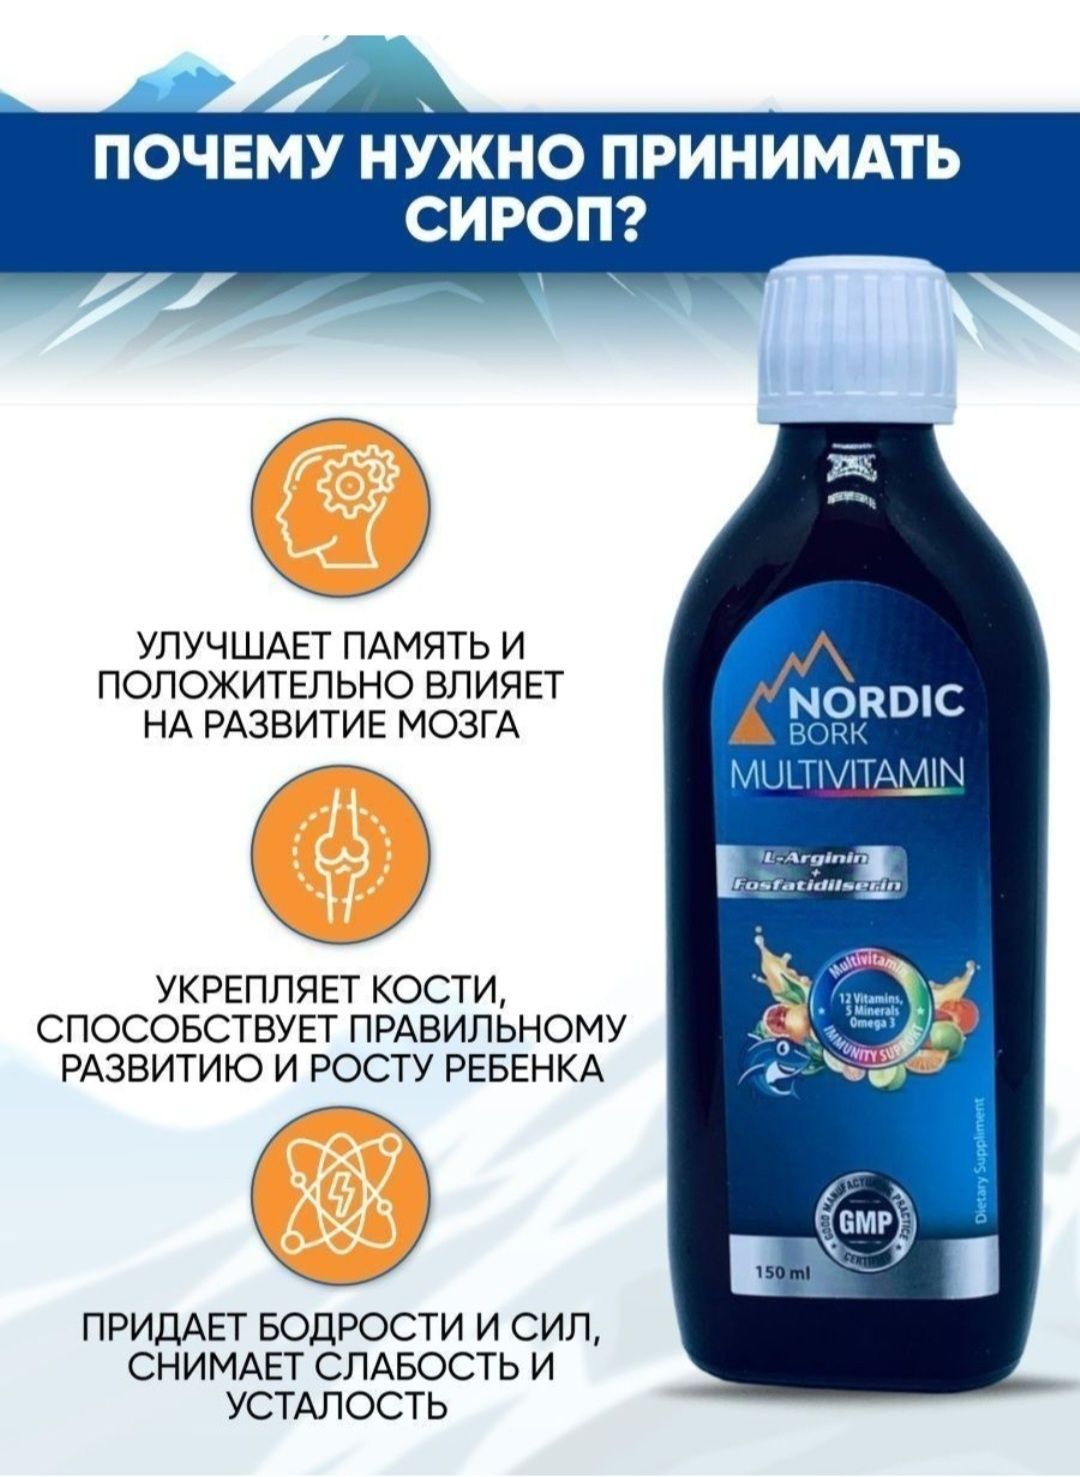 Nordic Bork/Мультивитаминый/рост/Комплекс/Omega-3/12 витаминов/5 минер